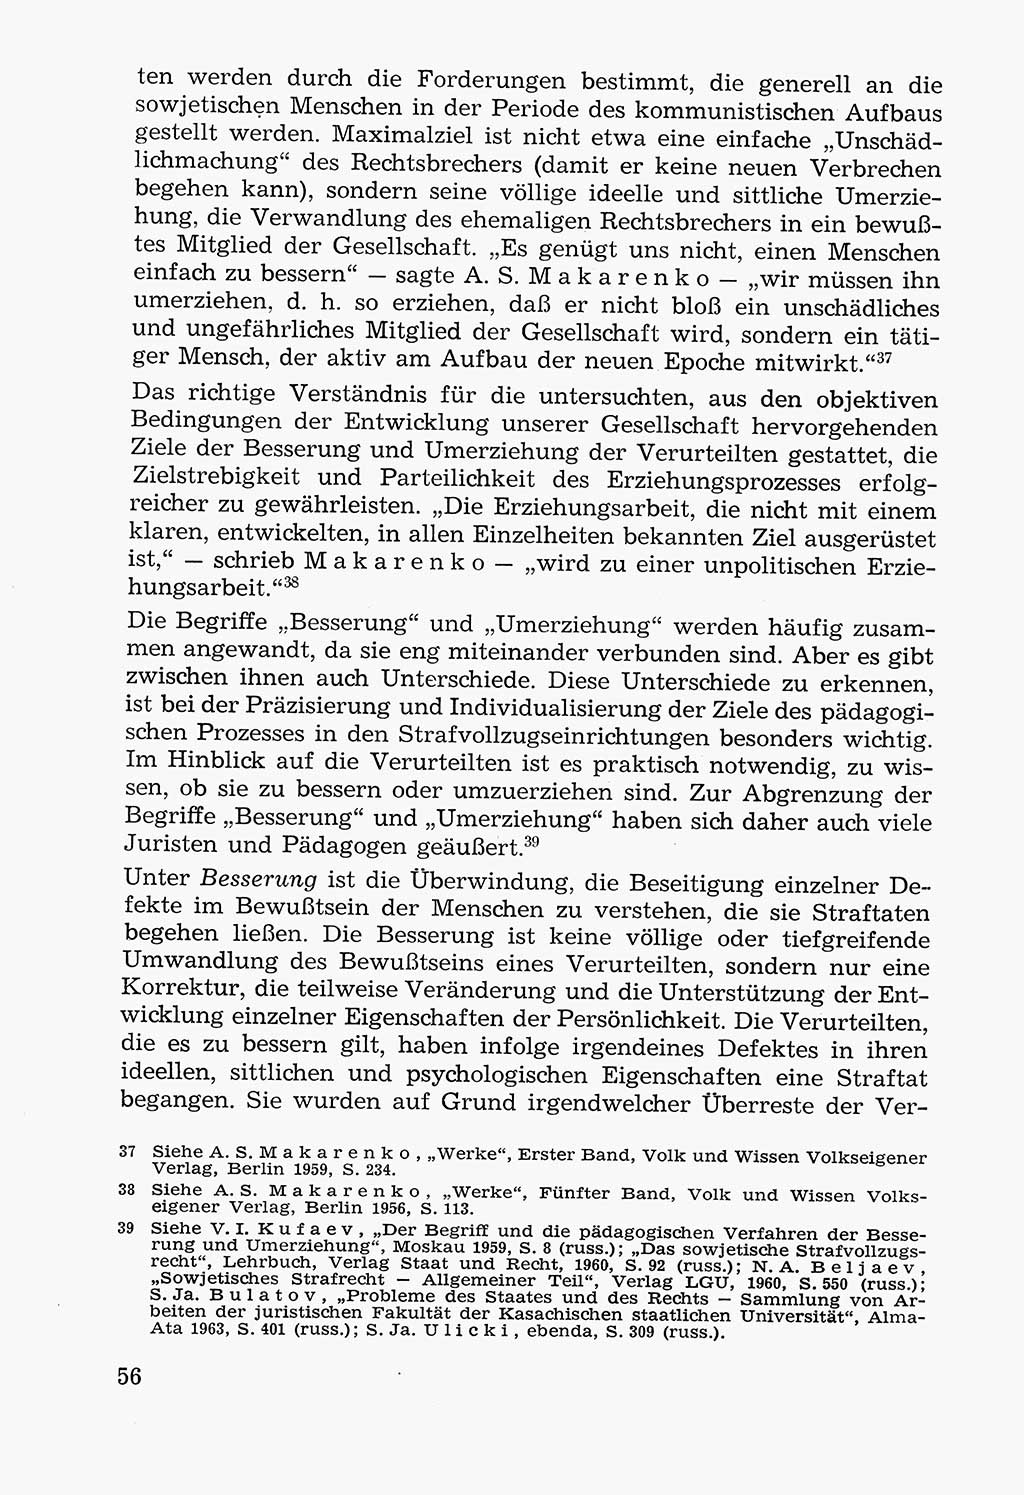 Lehrbuch der Strafvollzugspädagogik [Deutsche Demokratische Republik (DDR)] 1969, Seite 56 (Lb. SV-Pd. DDR 1969, S. 56)